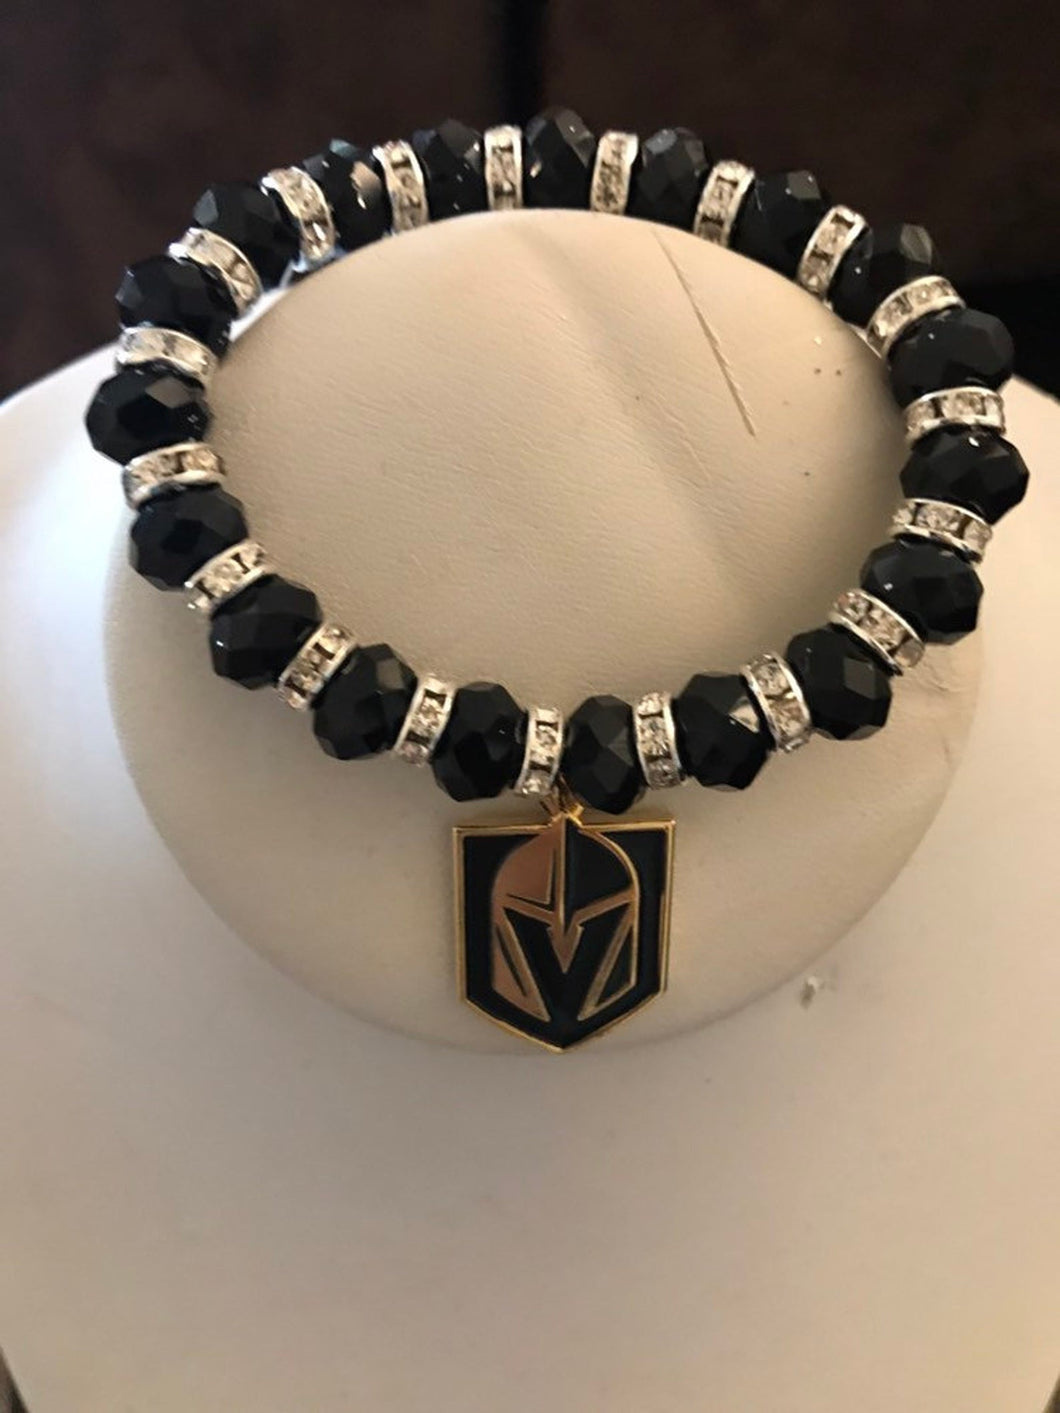 VGK Vegas Golden Knights rhinestone beaded bracelet